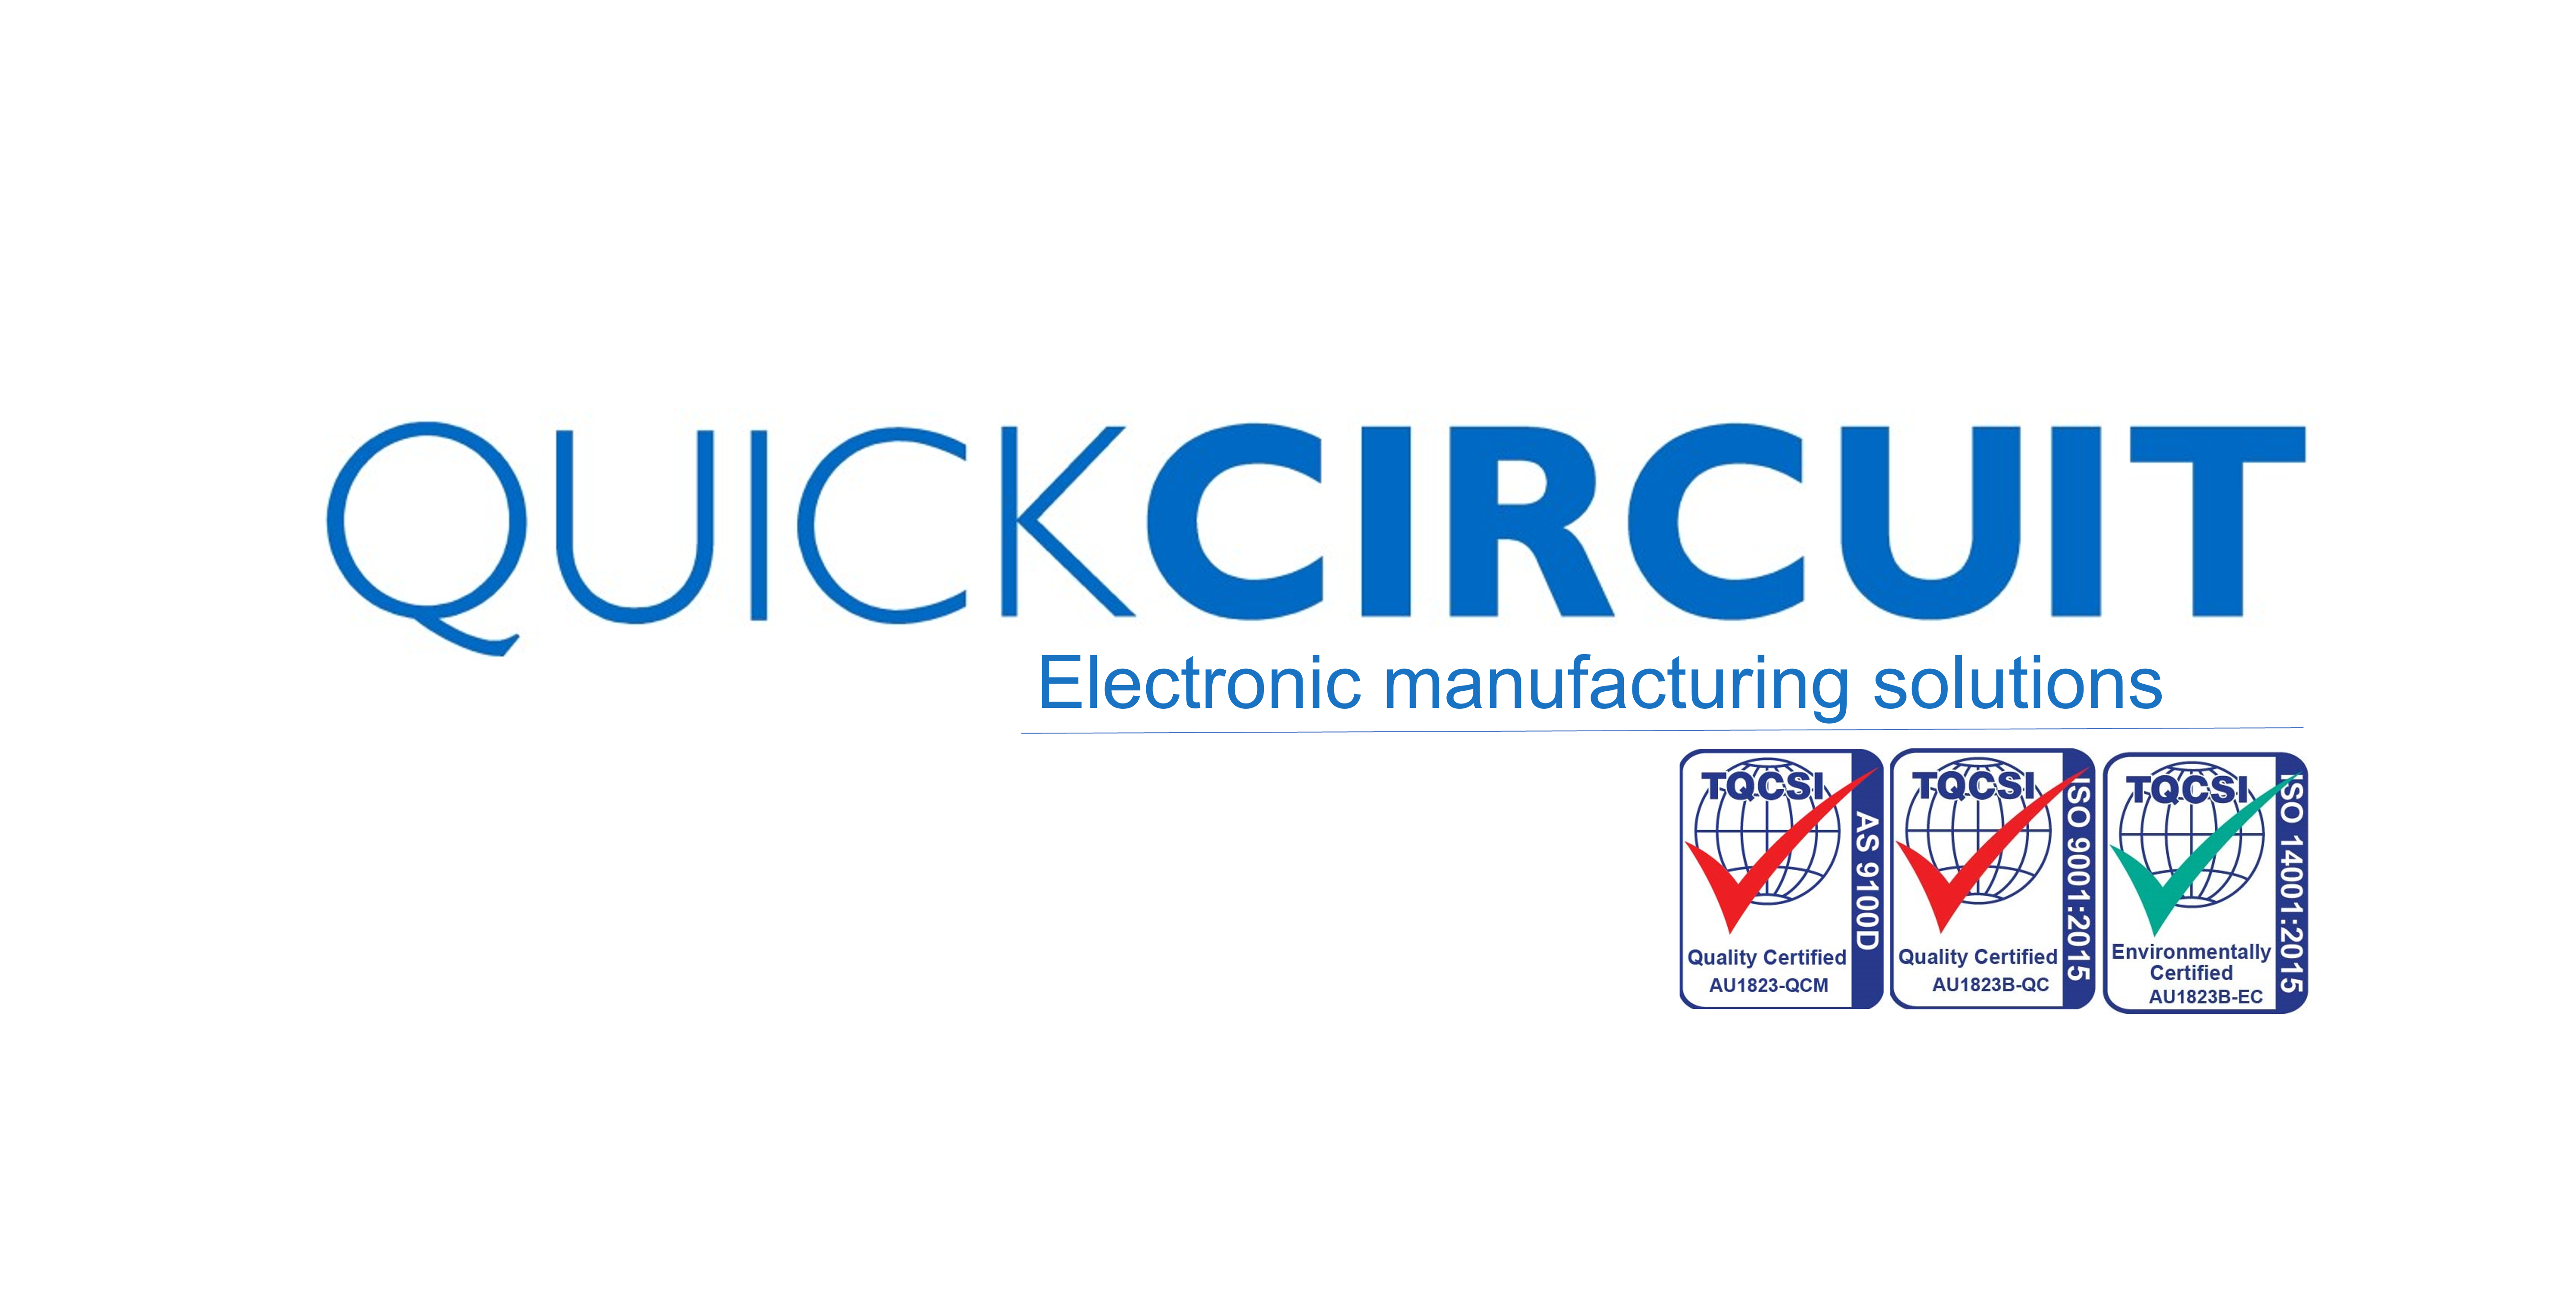 QuickCircuit Ltd